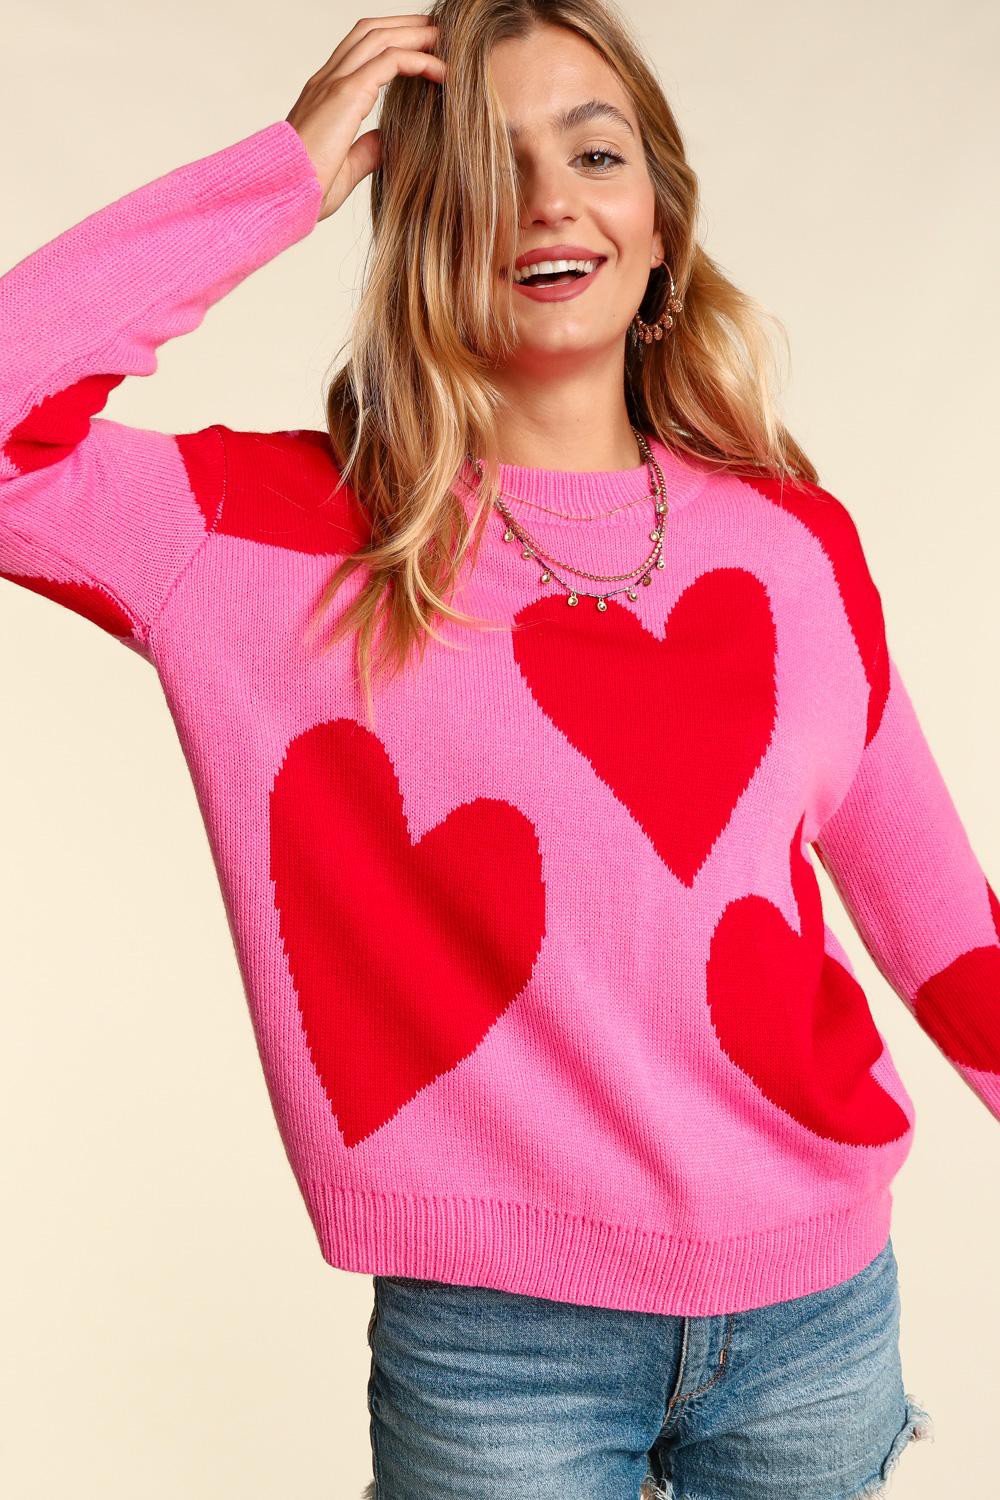 Heart Strings Sweater